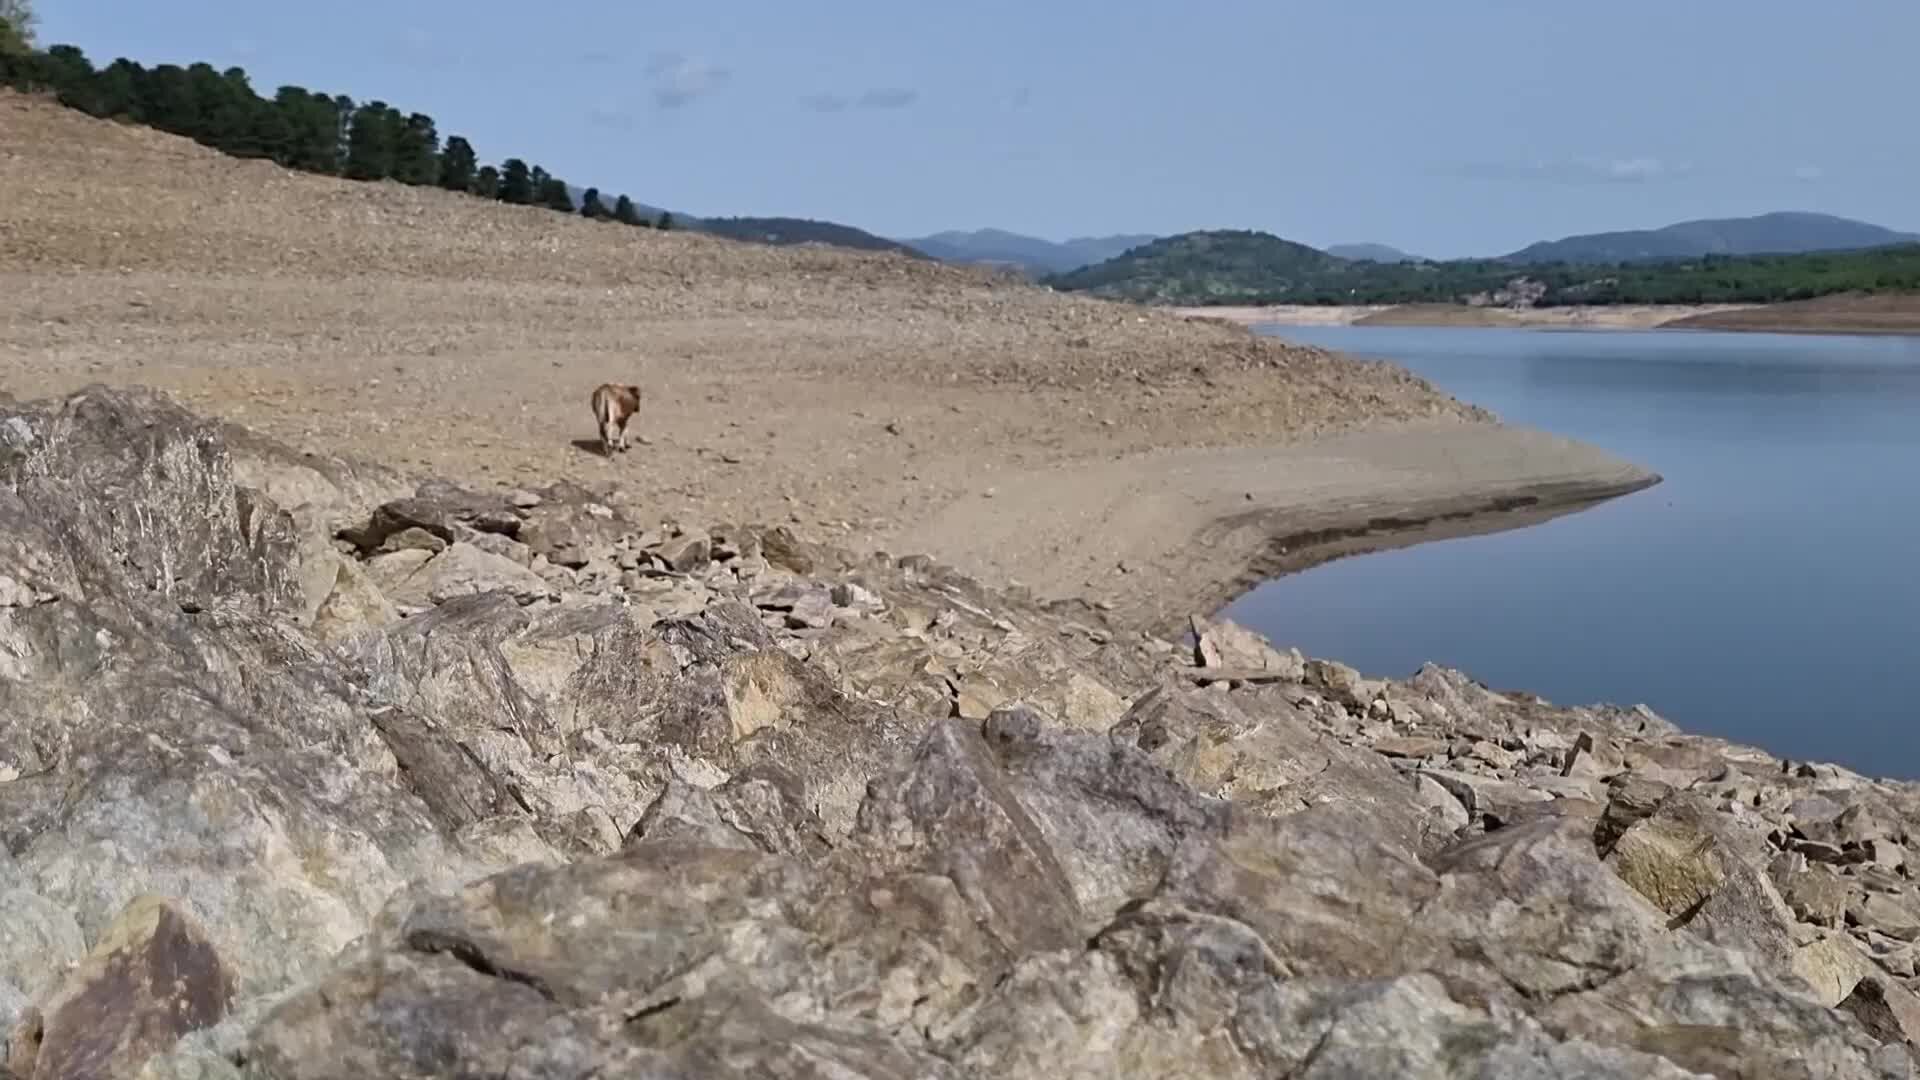 Allarme siccità in Sardegna, la situazione del Flumendosa è disastrosa: le immagini sono impressionanti